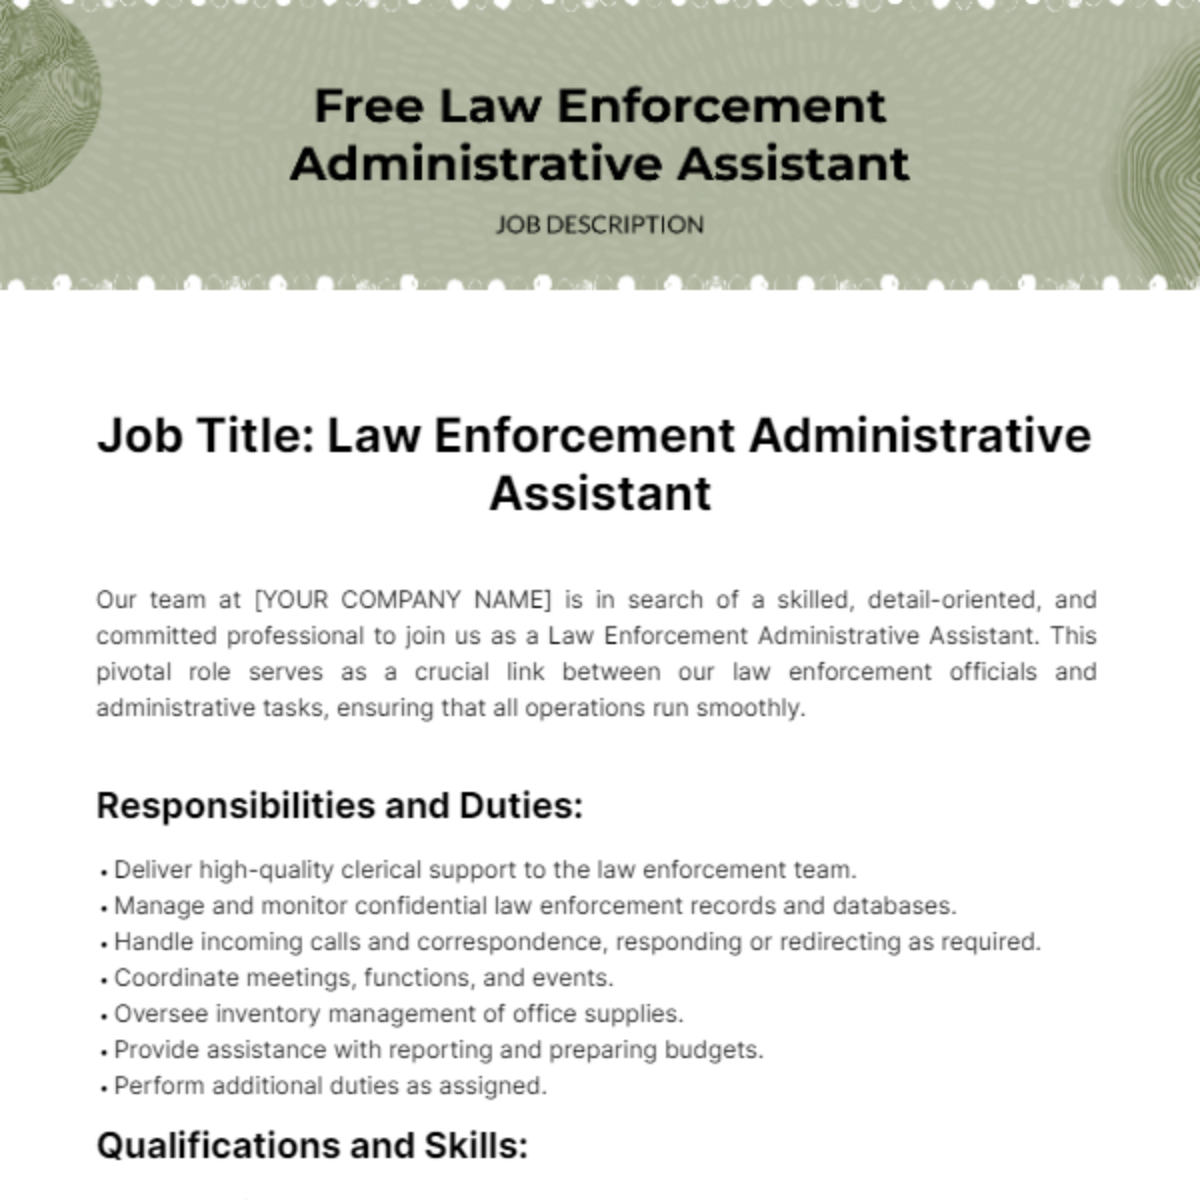 Free Law Enforcement Administrative Assistant Job Description Template